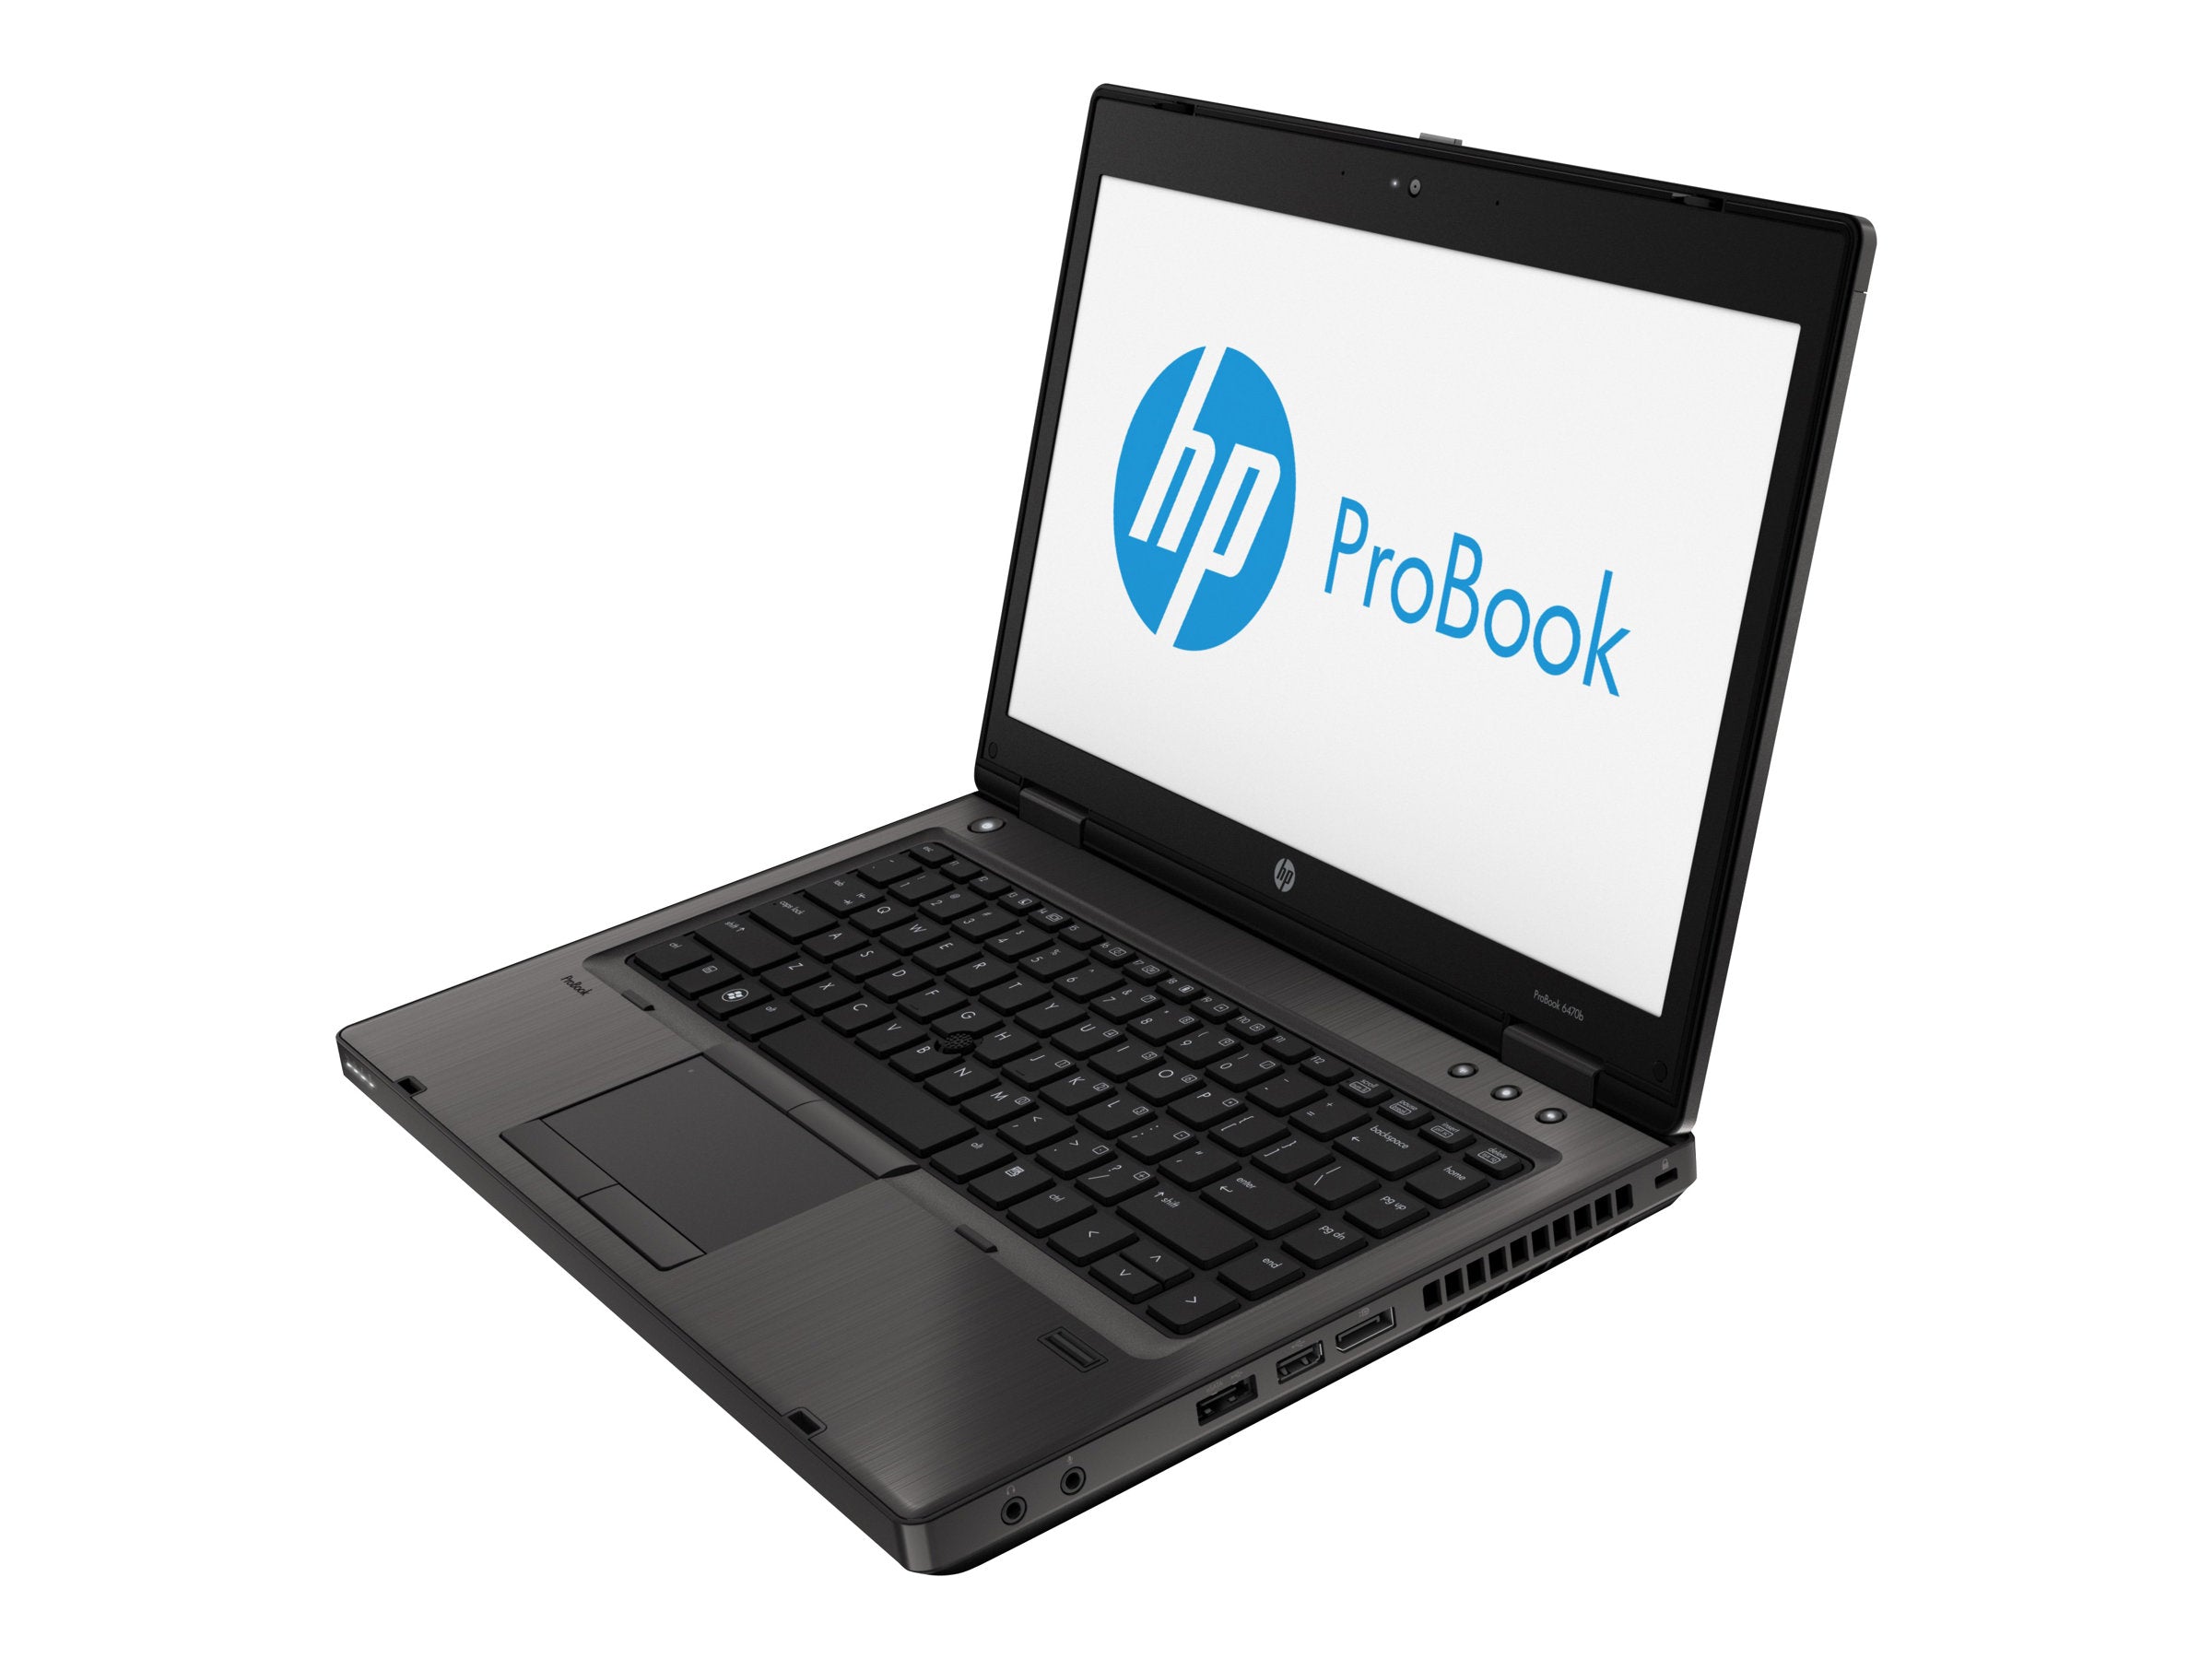 Ordinateur portable HP ProBook 6470b 14"remis à neuf (Intel Core i5 (3e génération) 2,70 Ghz/6 Go de RAM/320 Go de disque dur/WiFi/Bluetooth/DVDRW/VGA/4X USB/Windows 10)